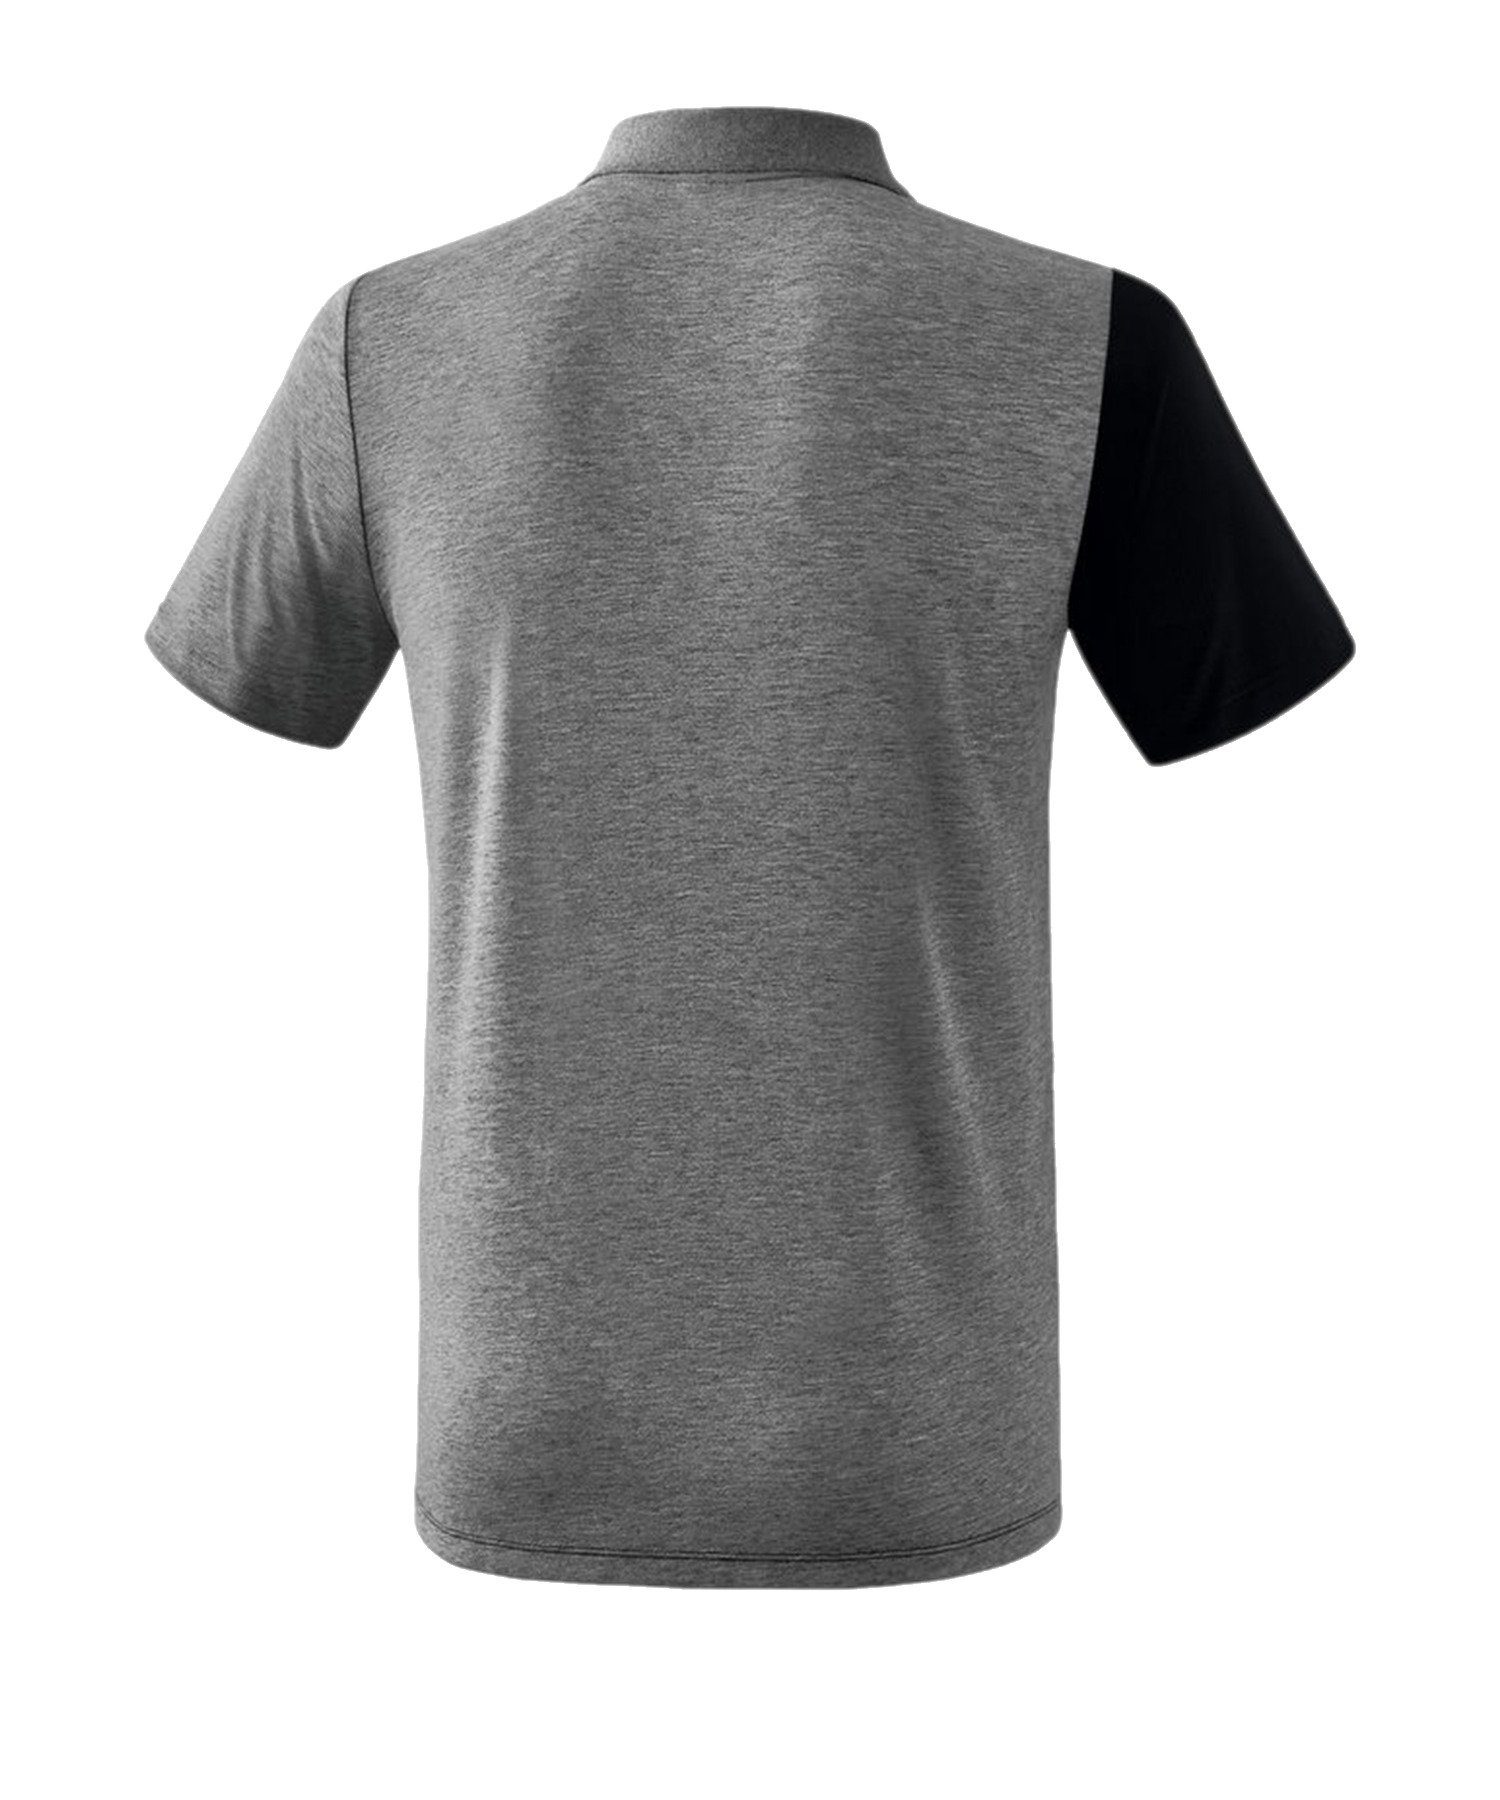 Erima T-Shirt 5-C default Poloshirt SchwarzGrauWeiss